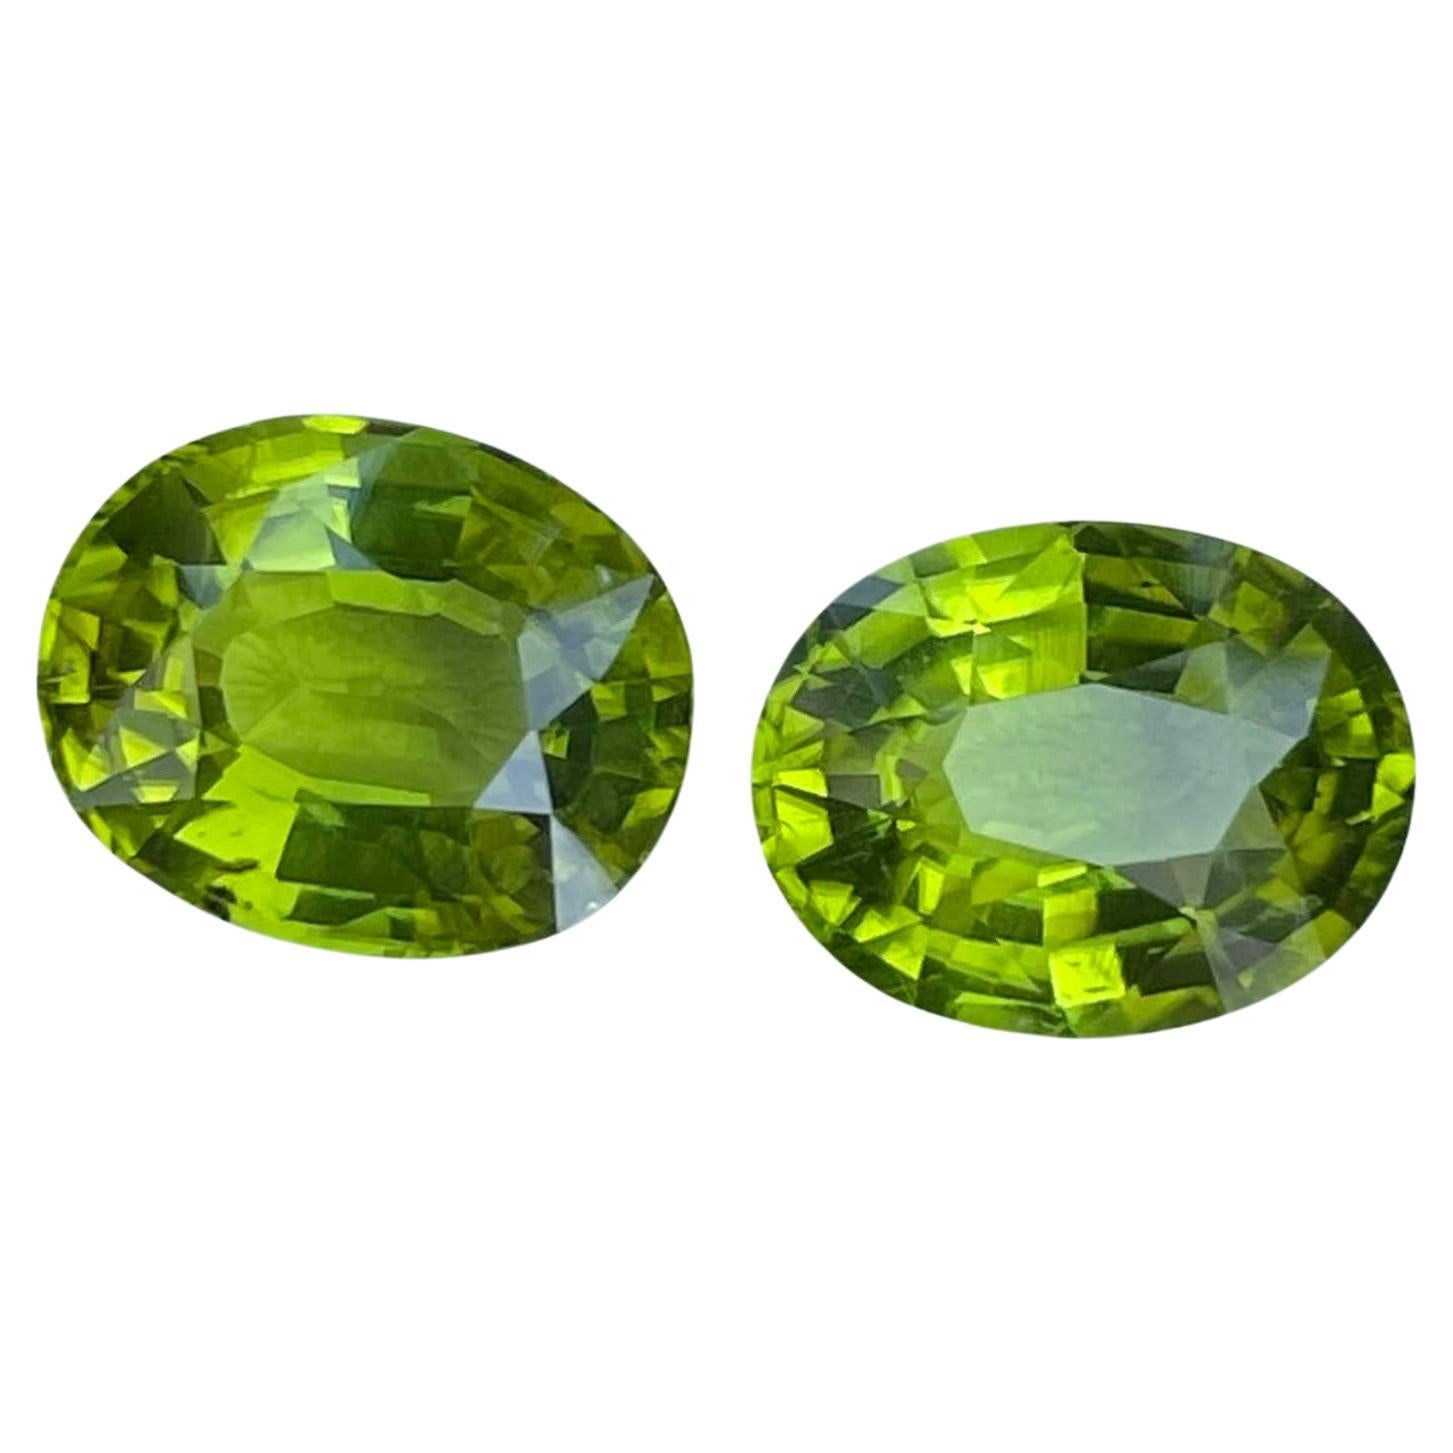 Paire de péridots verts non sertis de 8.20 carats, pierre précieuse naturelle pakistanaise de taille ovale fantaisie